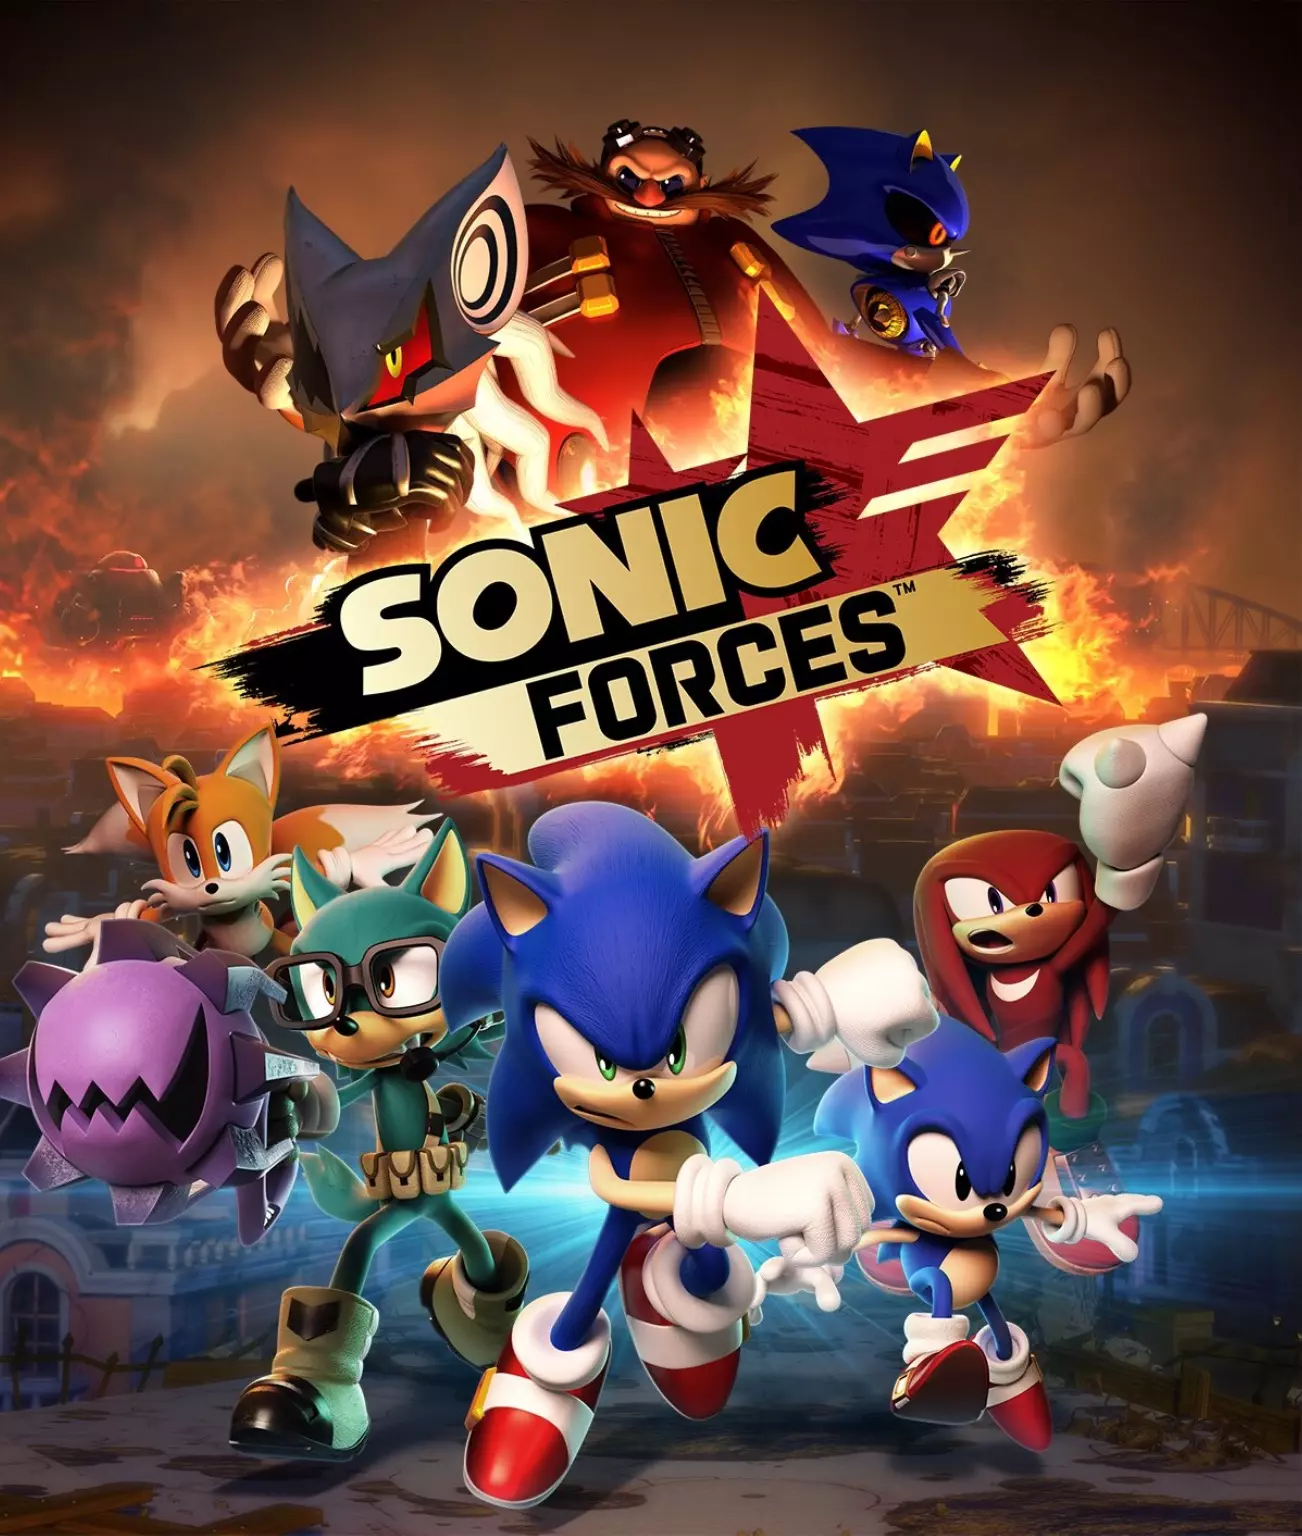 В игре Sonic Forces есть возможность создавать сврего собственного персонажа.